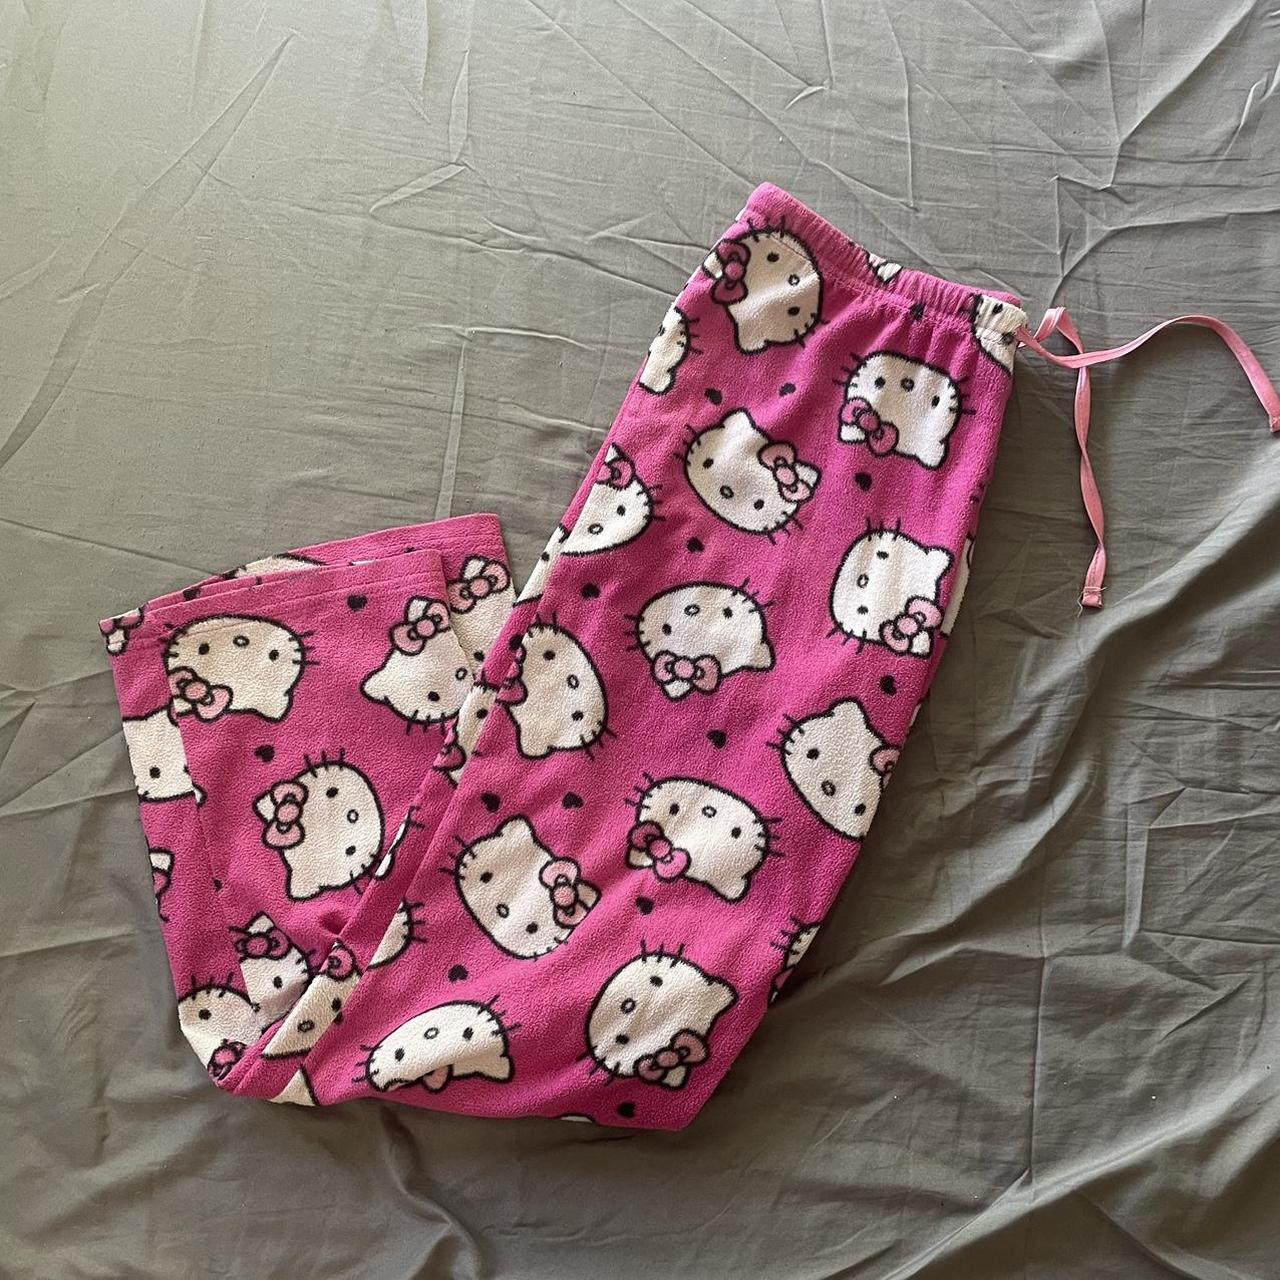 Hello Kitty Women's Pajamas | Depop